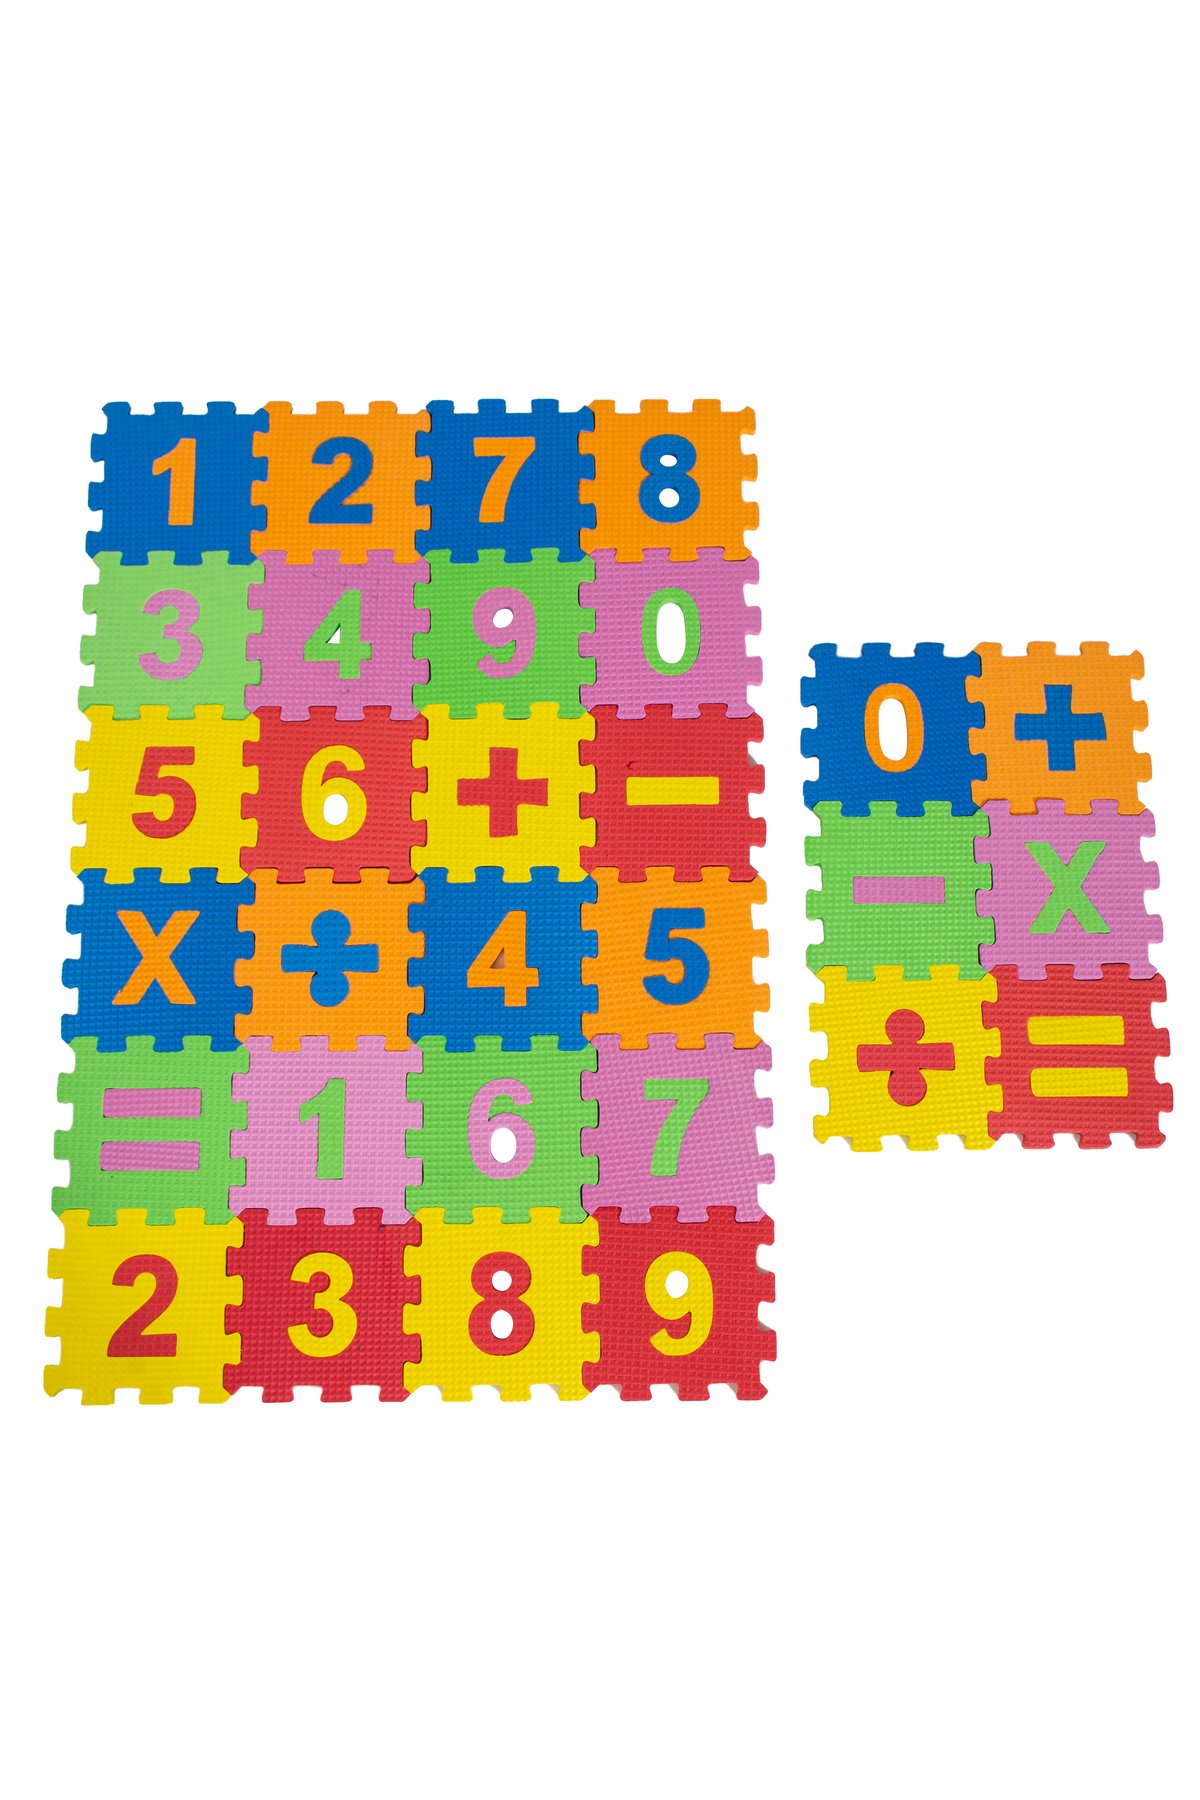 Harf Ve Matematik Seti Eva Puzzle Eğitici Oyuncak & 66 Parça Mini Yer Karosu